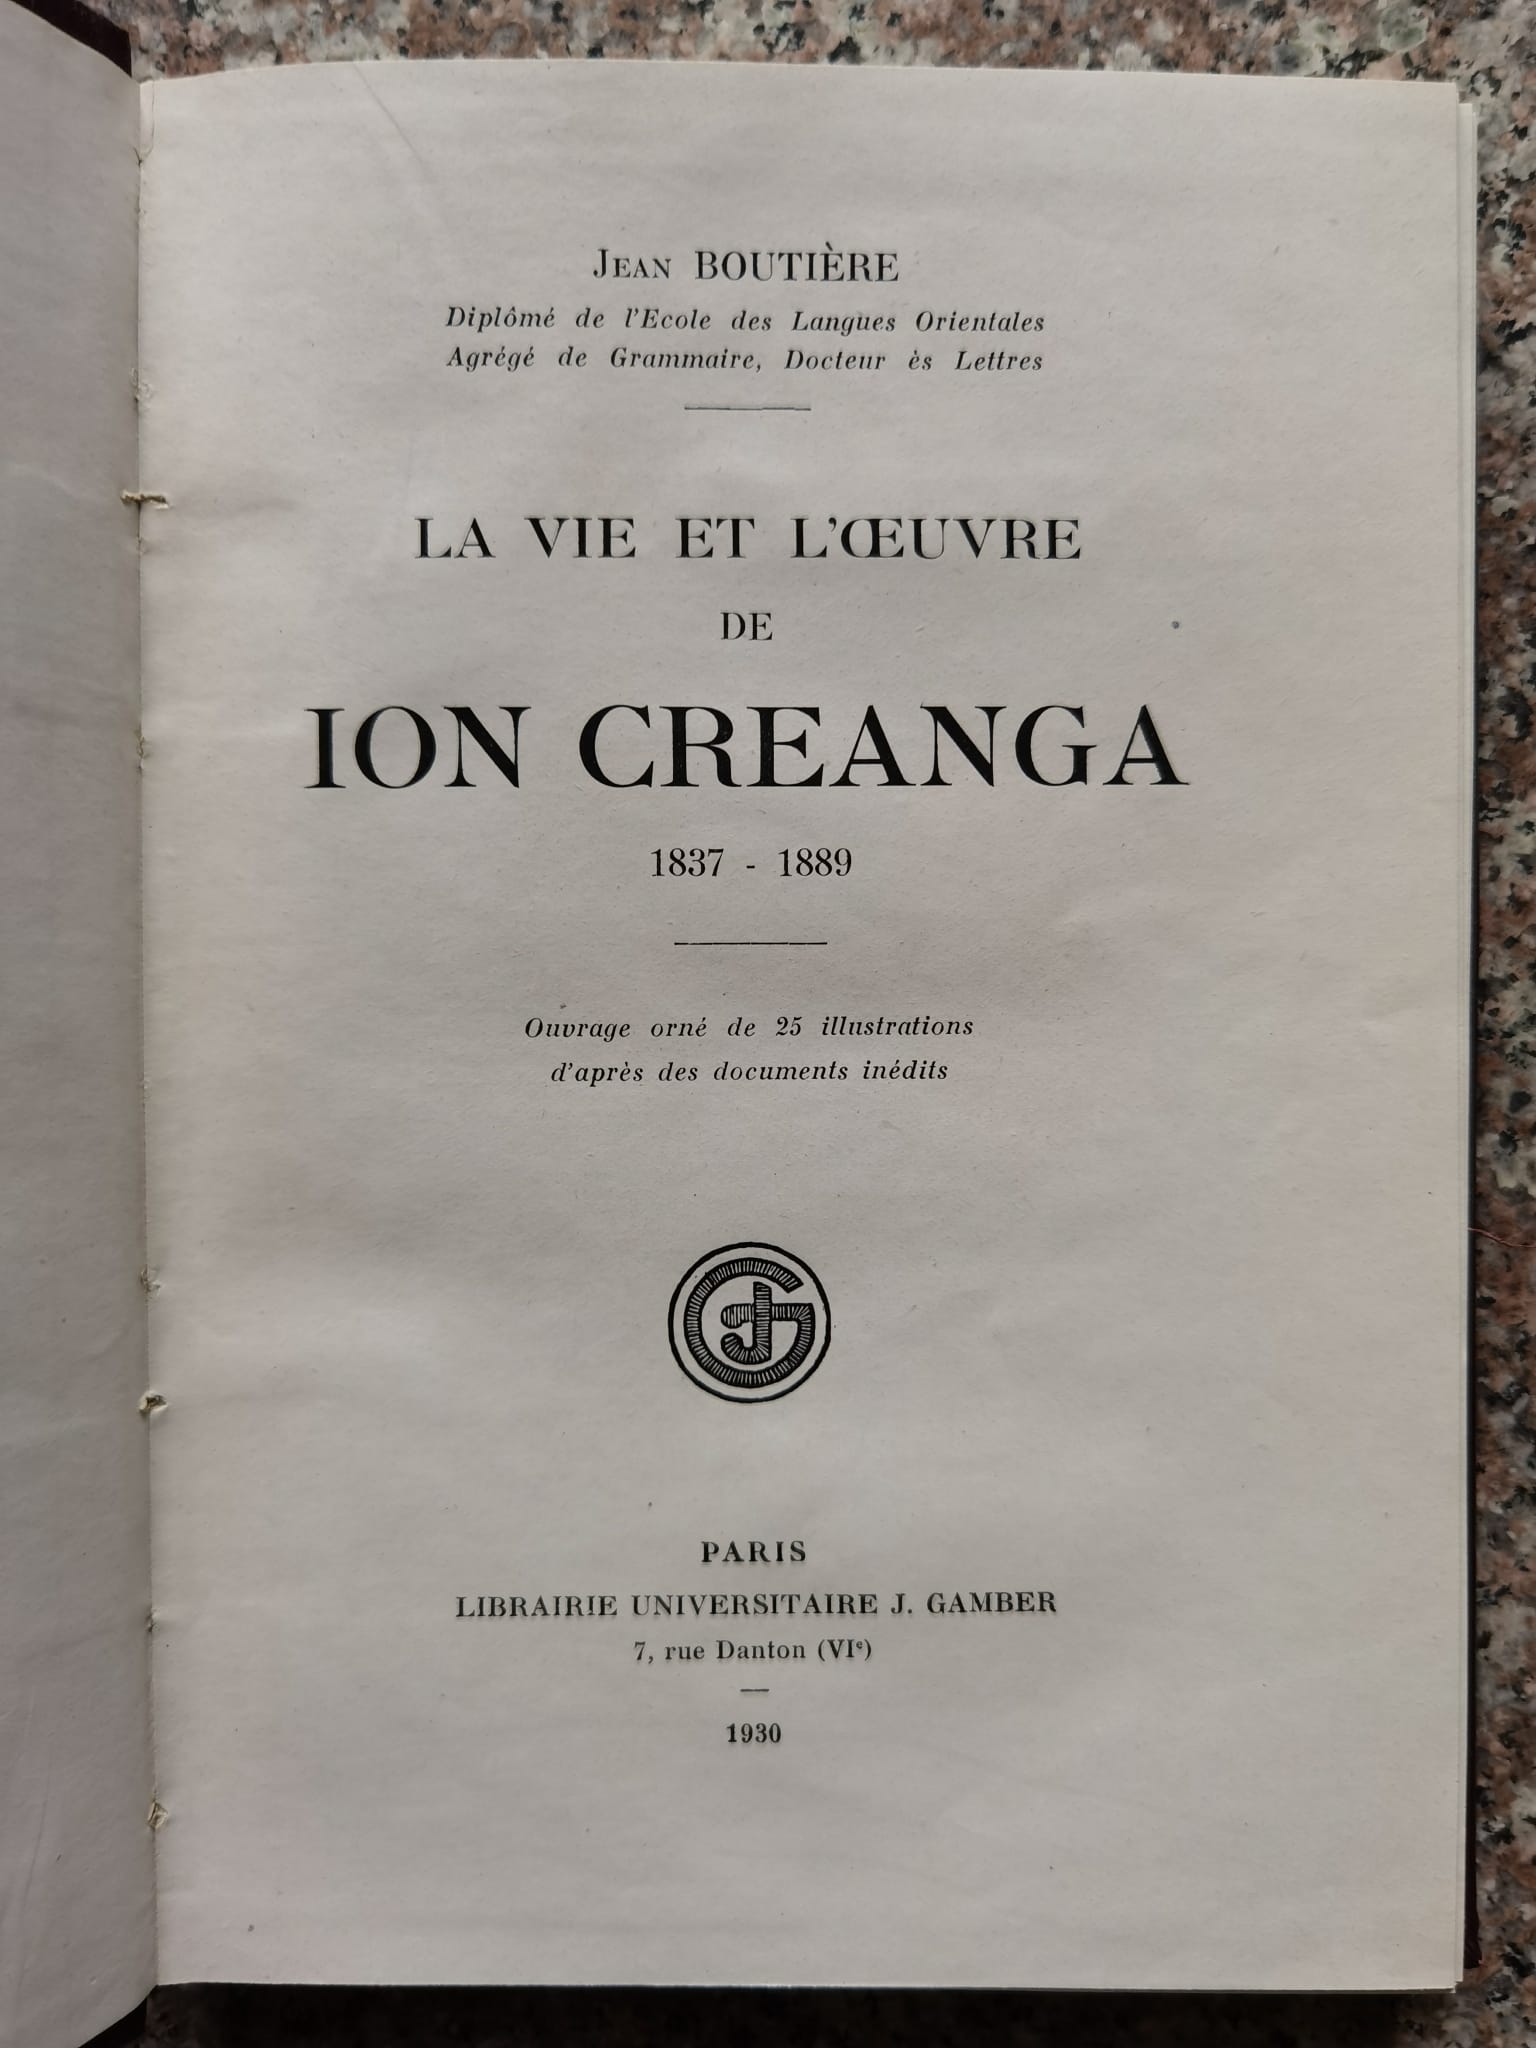 la vie et l'oeuvre de ion creanga (1837-1889)                                                        jean boutiere                                                                                       